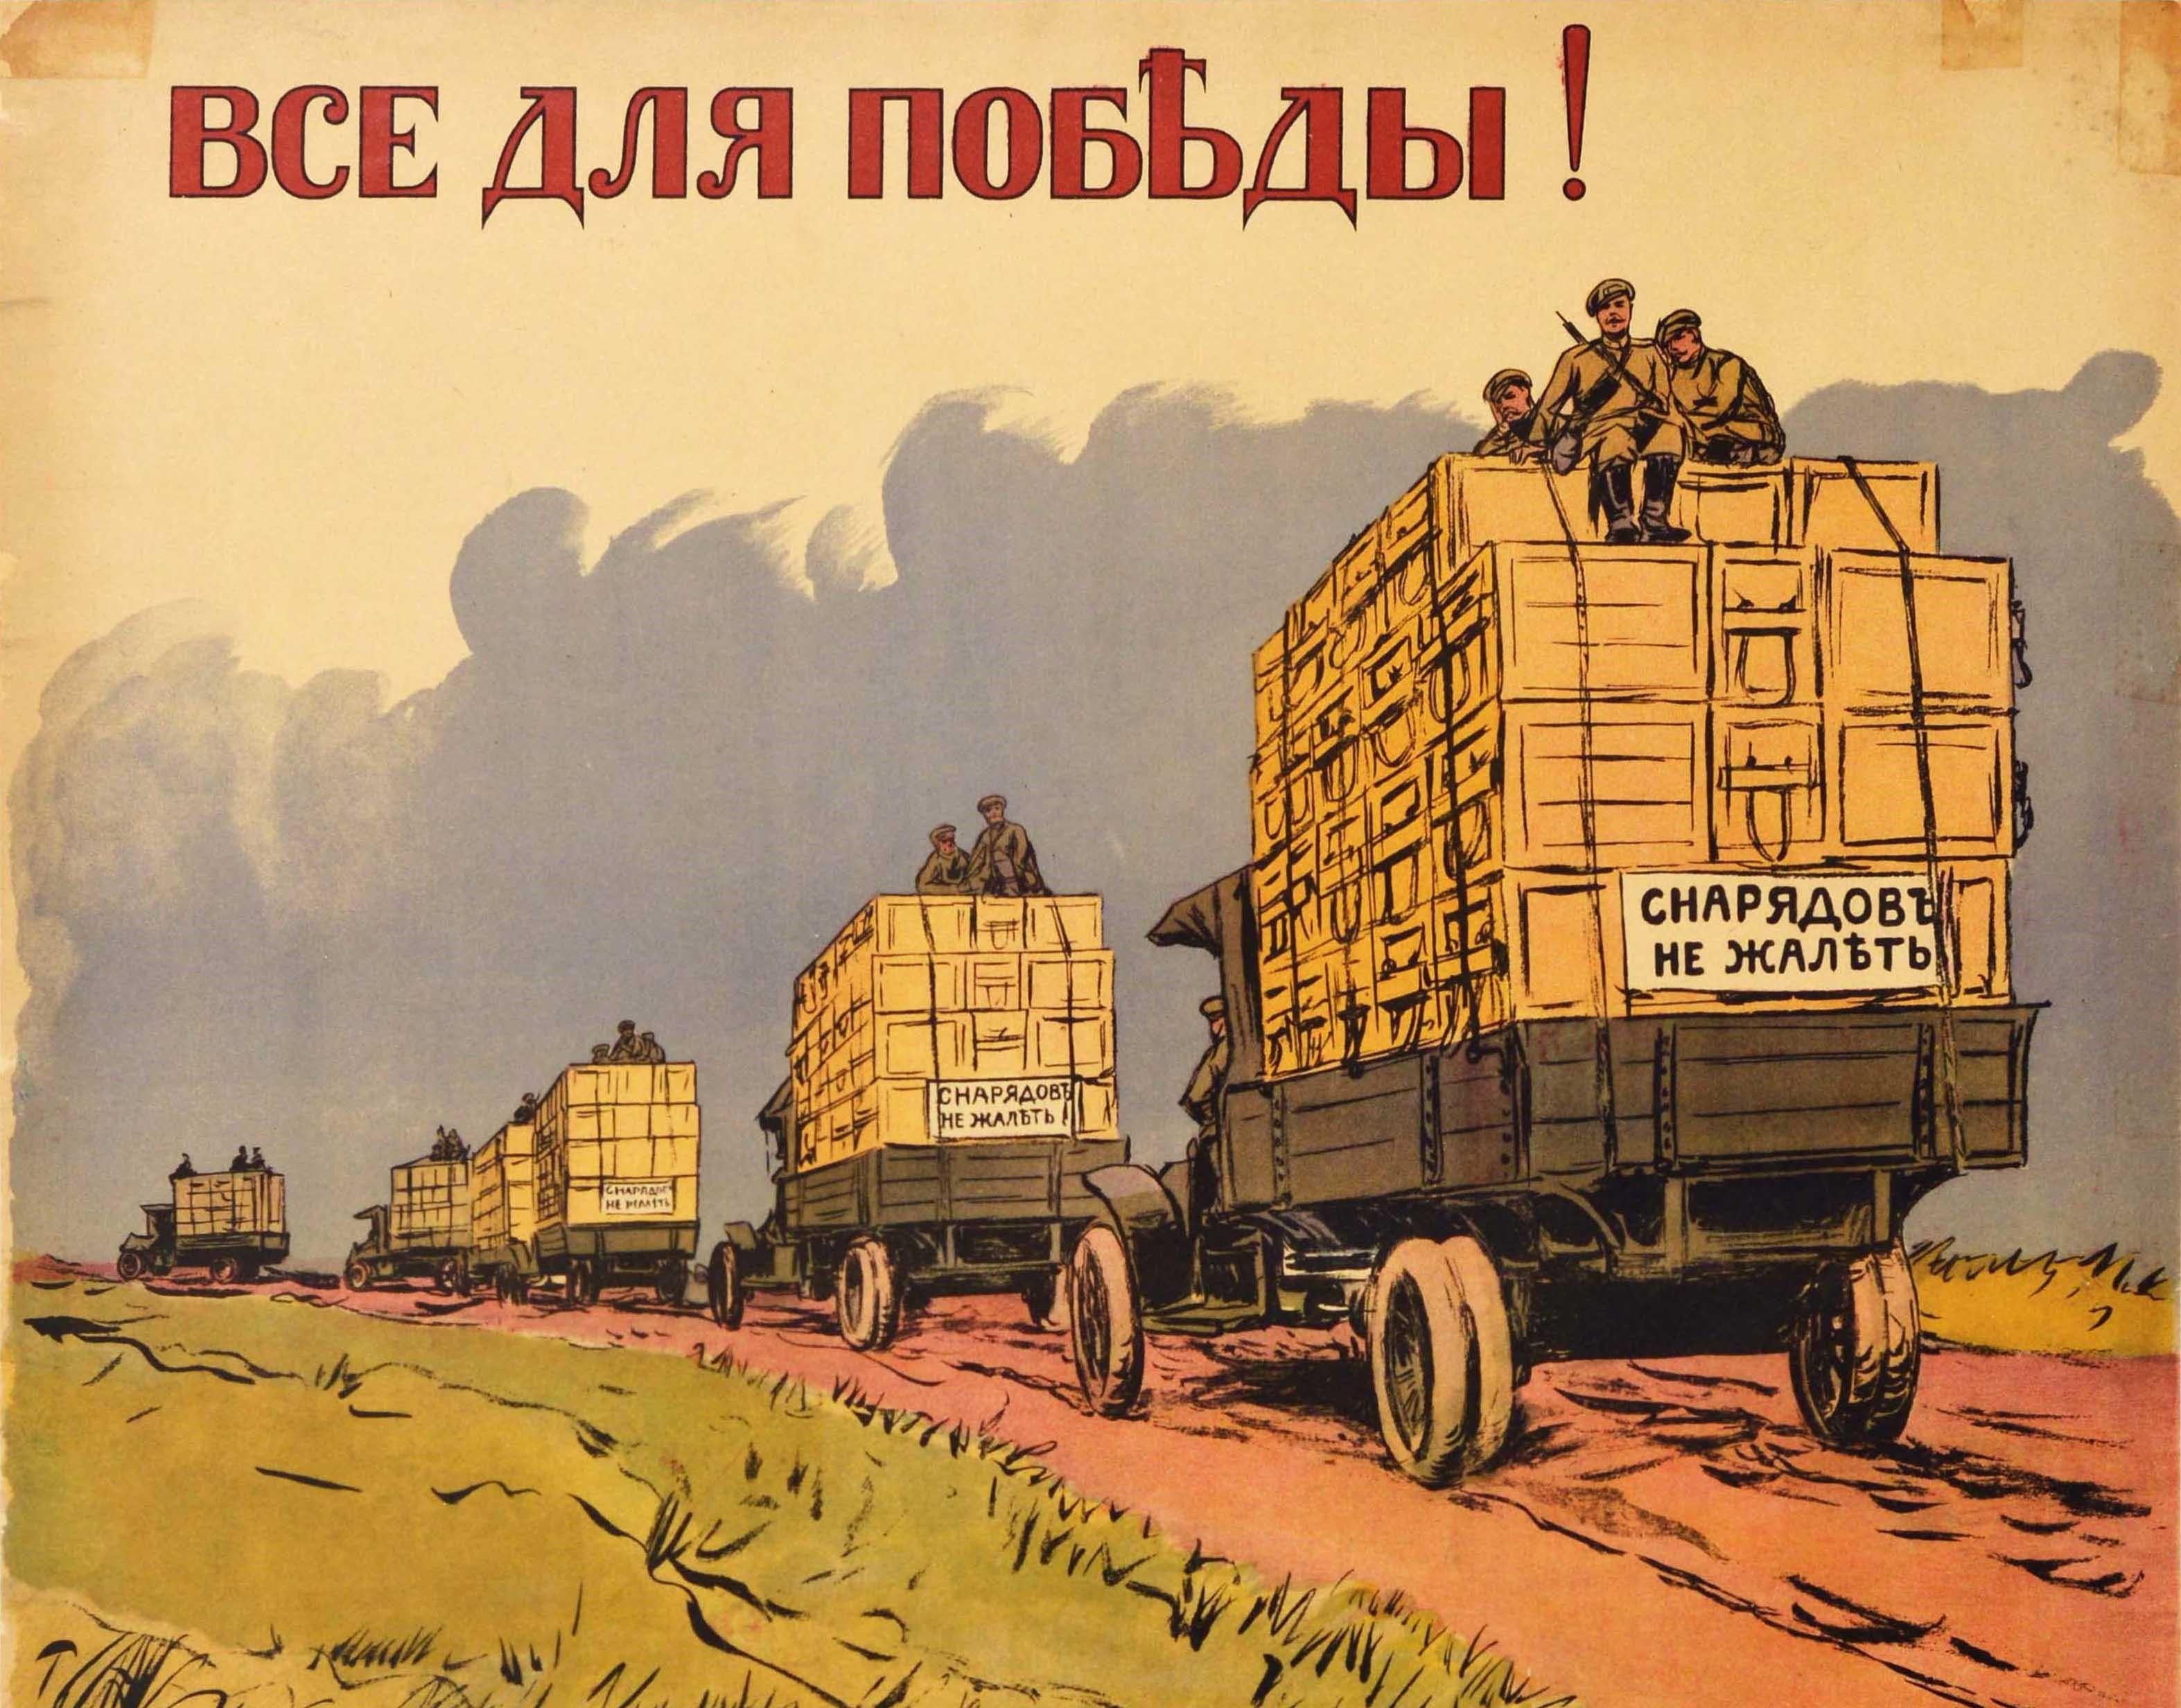 Originales antikes Kriegsanleihe-Plakat aus dem Ersten Weltkrieg - Alles für den Sieg Kaufen Sie Militäranleihe 5½% / ??? ??? ??????! ????????????? ?? ??????? ???? 5½% - zeigt einen Konvoi von Militärlastwagen, die Kisten auf einer Landstraße